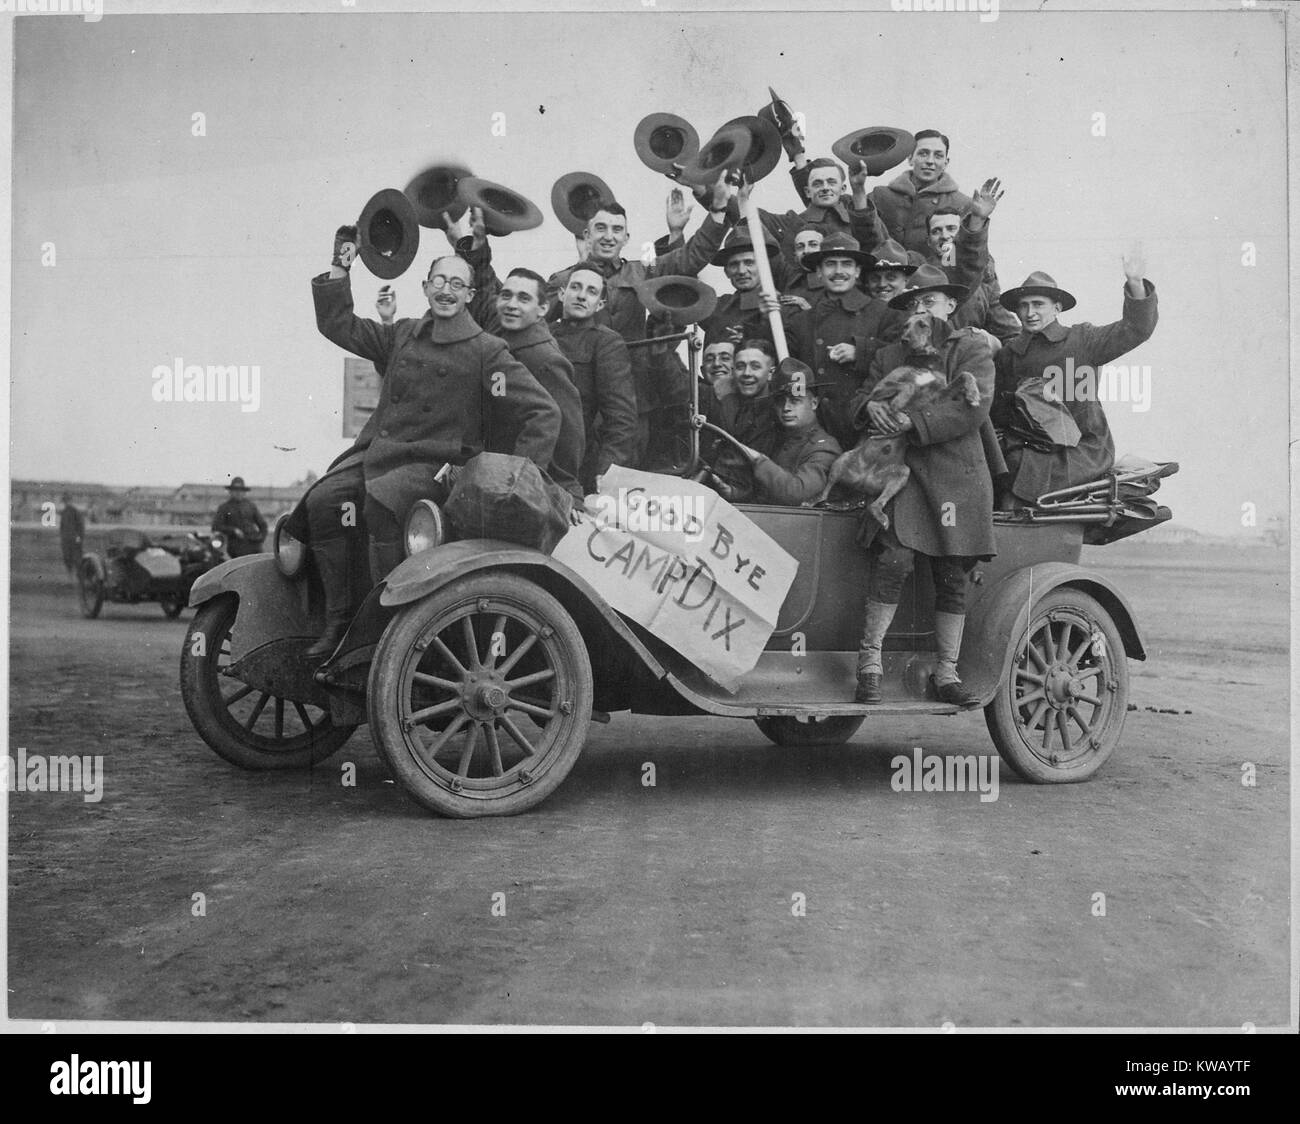 Una dozzina di soldati USA, indossano uniformi con lana di cappotti e cappelli di sollevamento verso l'aria, il sorriso e la forma d'onda impilati in una macchina sul loro modo di Camp Dix, con un segno di cartone che legge 'addio Camp Dix, ' New Jersey, 1917. Immagine cortesia archivi nazionali. Foto Stock